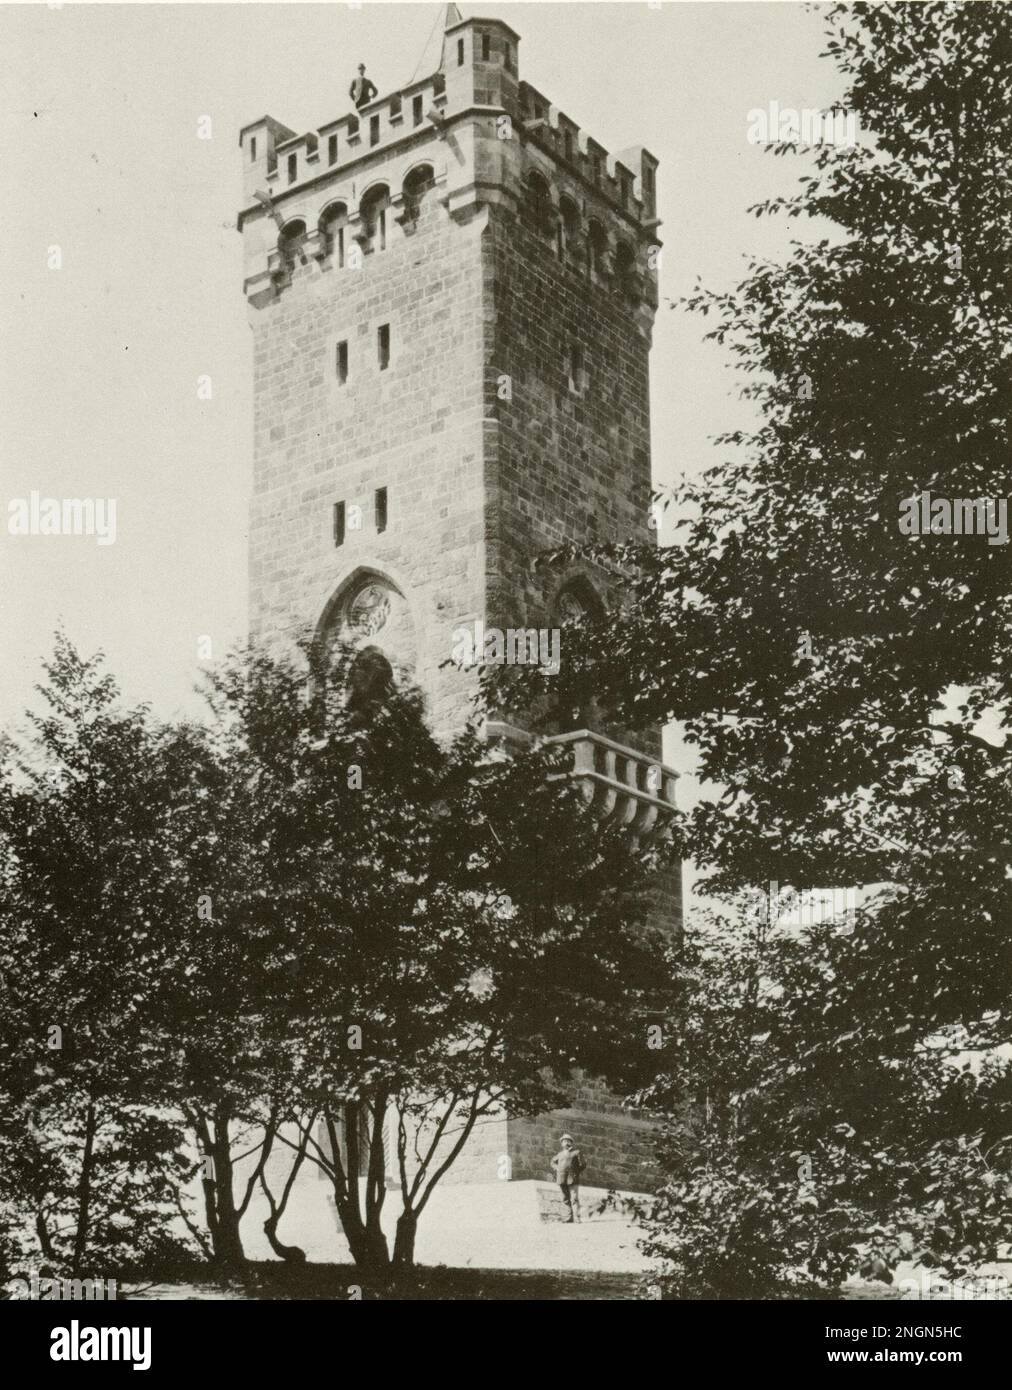 Bielefeld, Deutschland 1894 drei Kaiserturm (Turm der drei Kaiser) auf der Hünenburg. Es wurde 1894 erbaut, um das Jahr der drei Kaiser zu feiern, und 1952 abgerissen. Es wurde als Fernmeldeturm benutzt Stockfoto